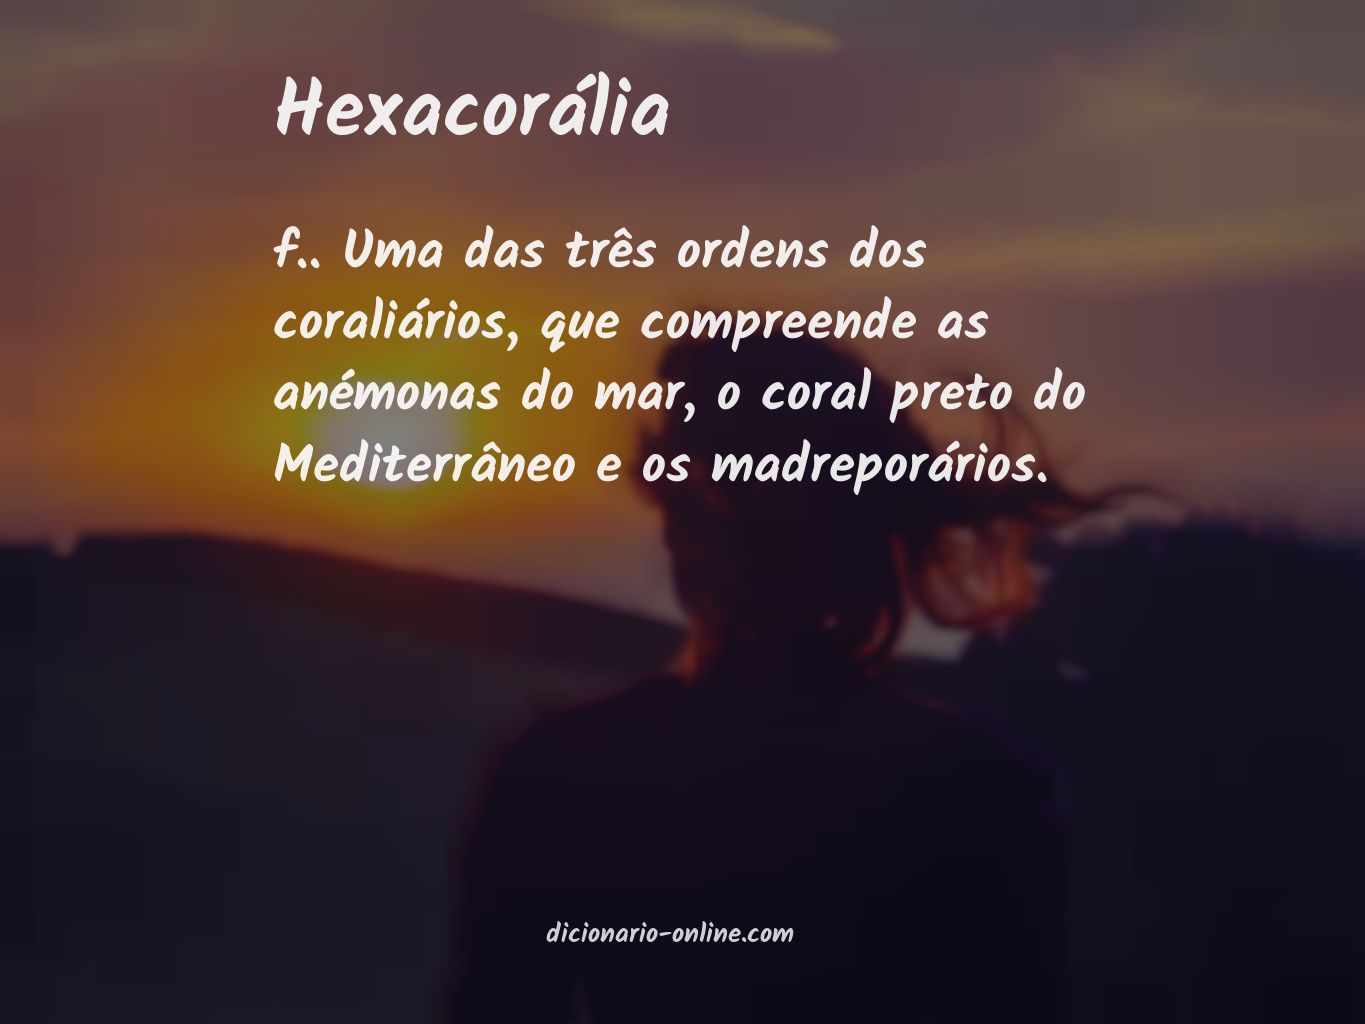 Significado de hexacorália